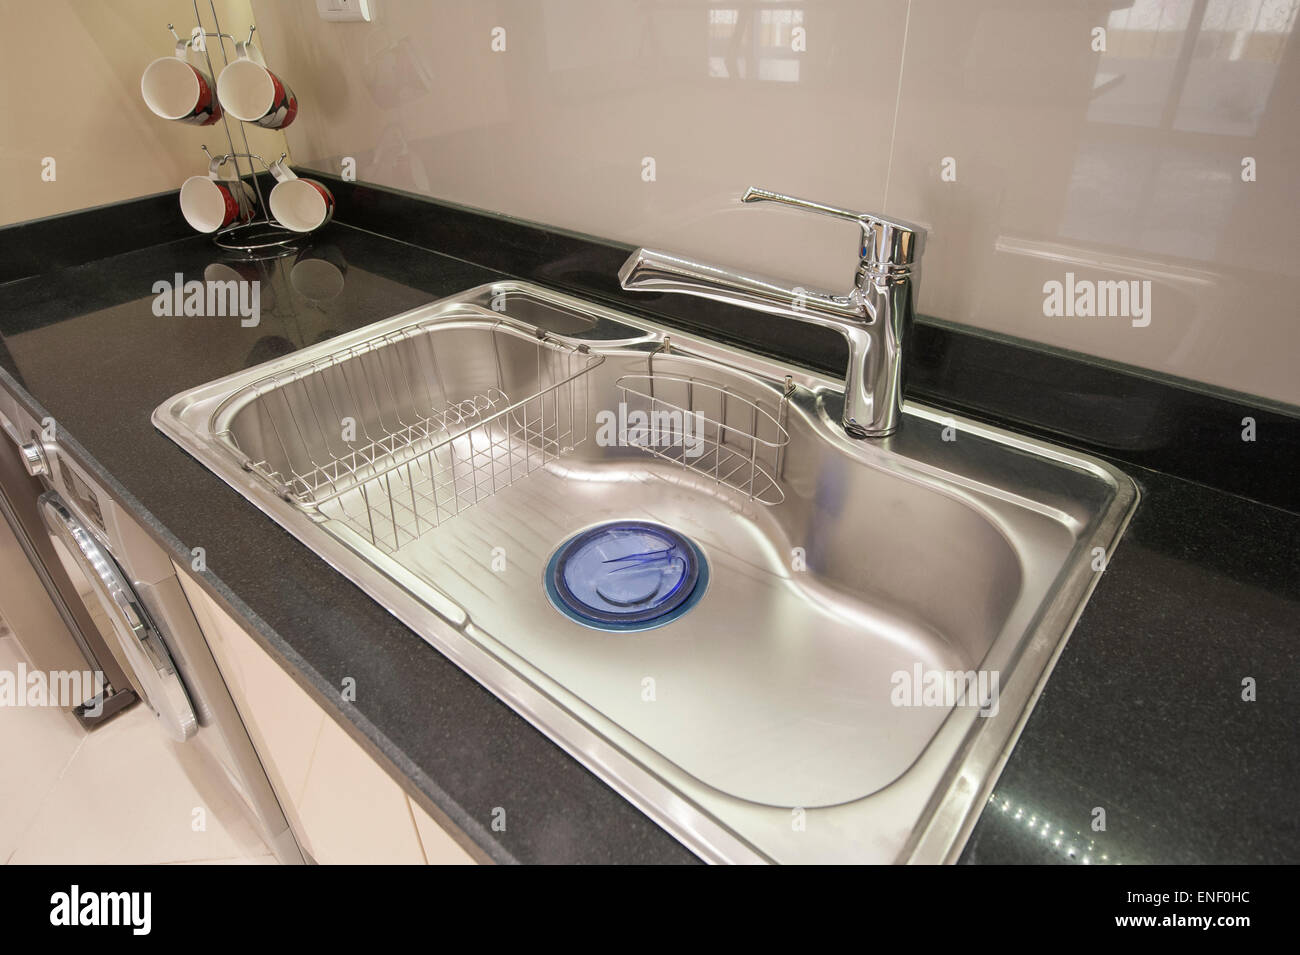 Décoration design d'intérieur de la cuisine dans un appartement de luxe avec évier et robinet Banque D'Images